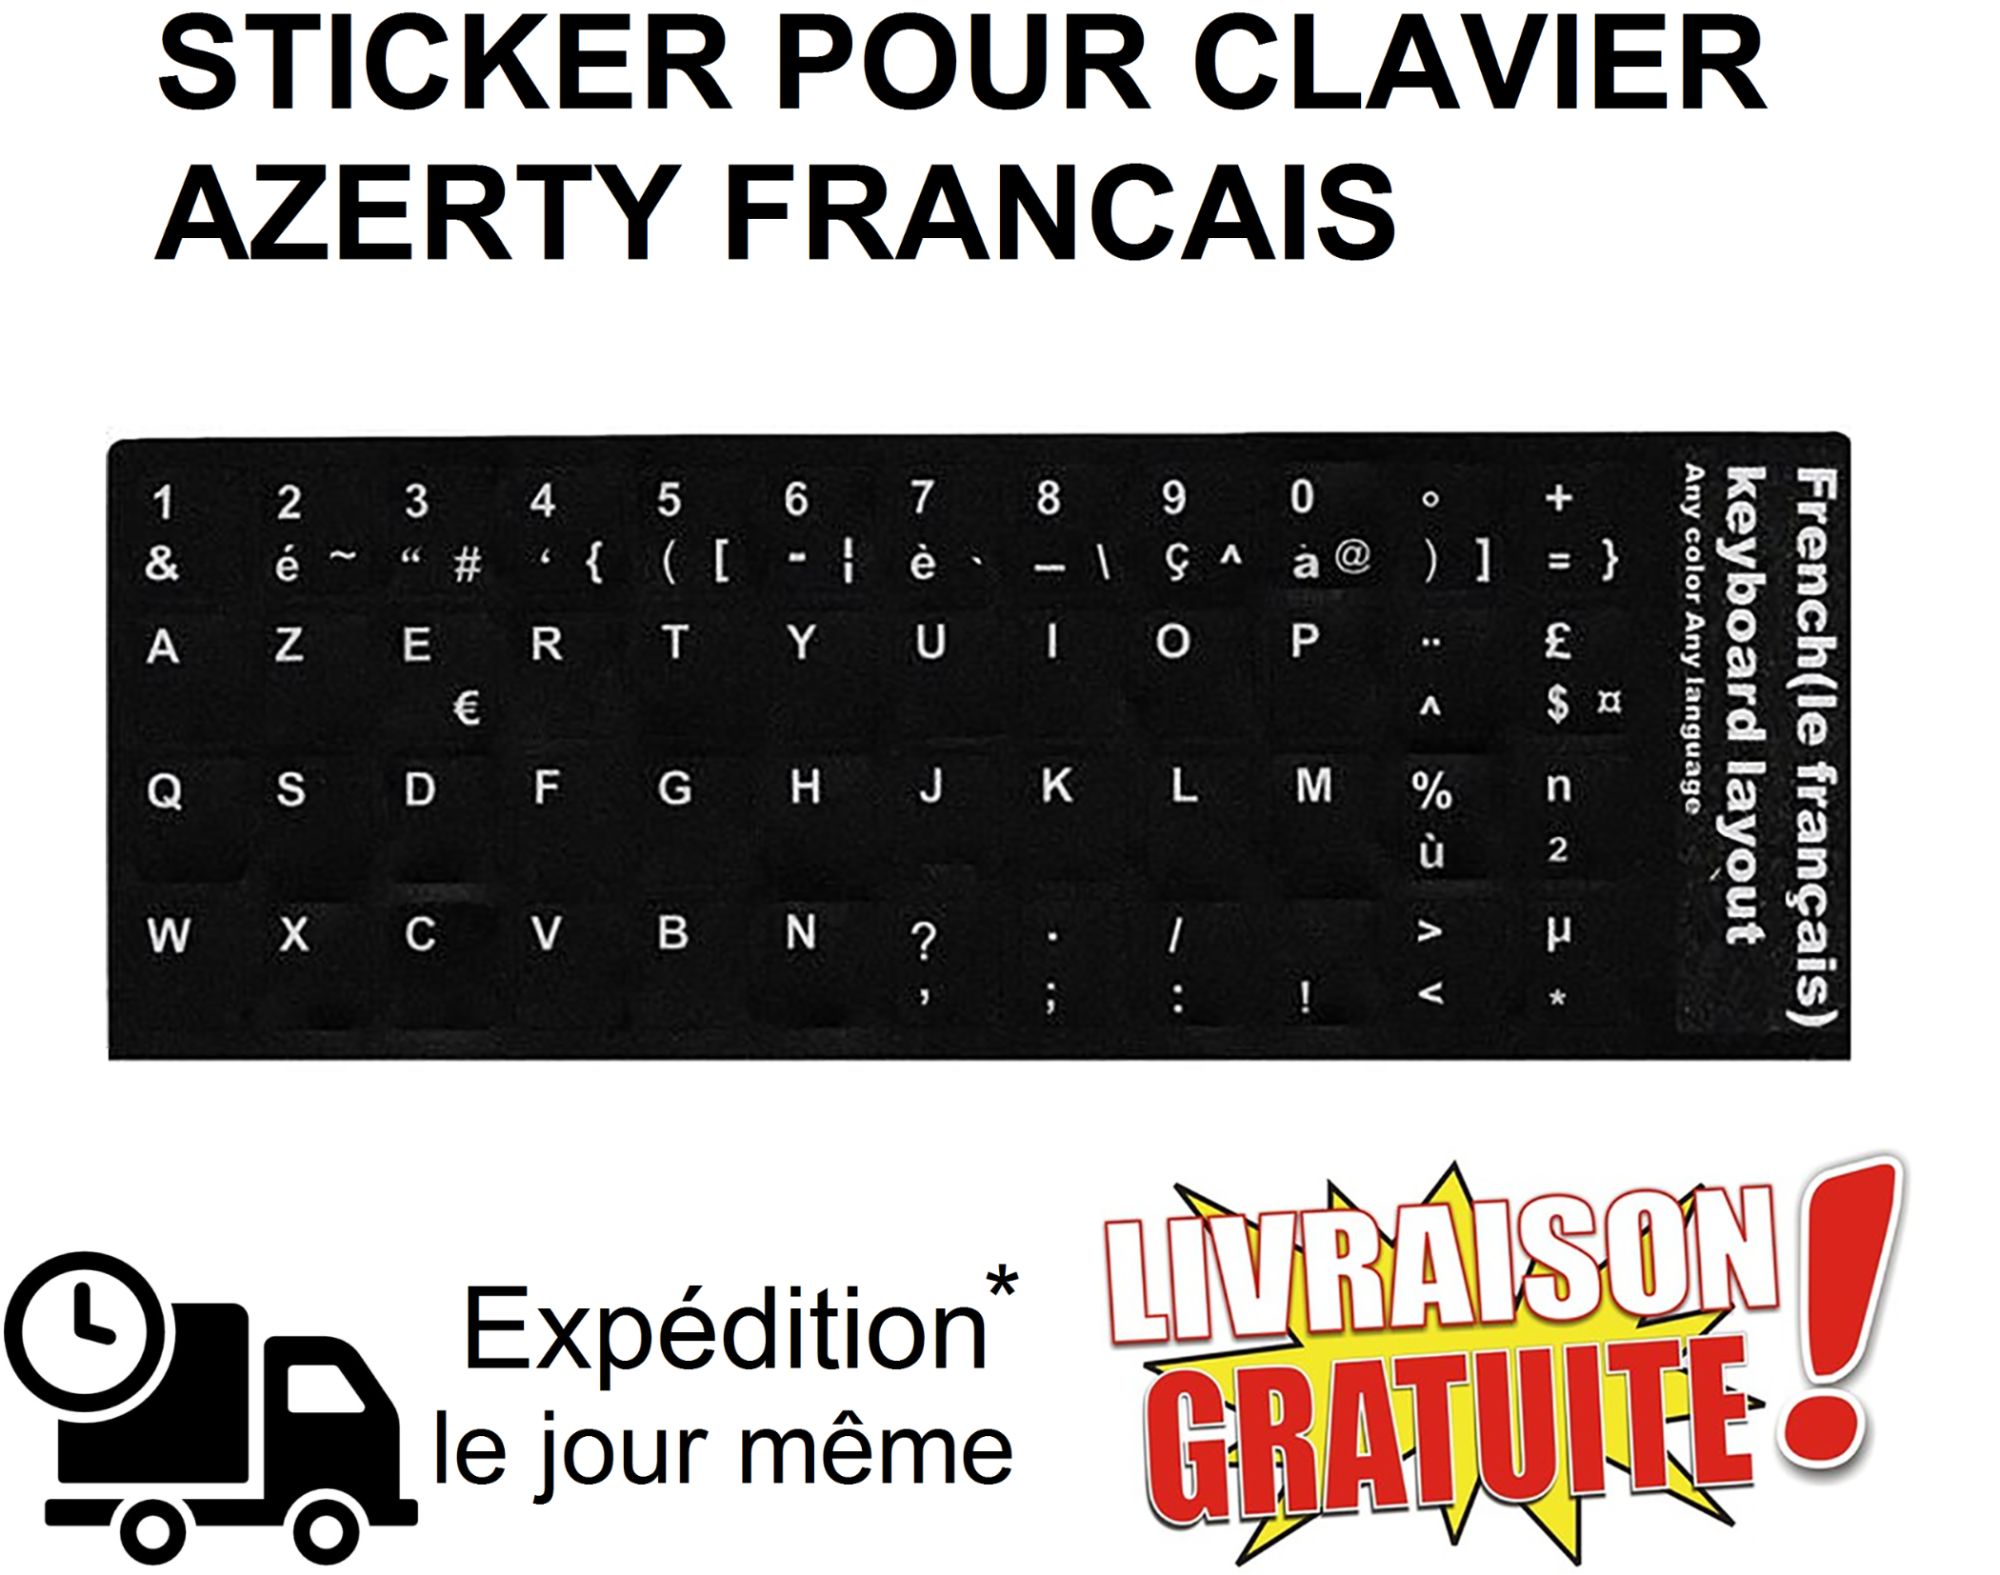 Stickers Autocollants Clavier AZERTY Française